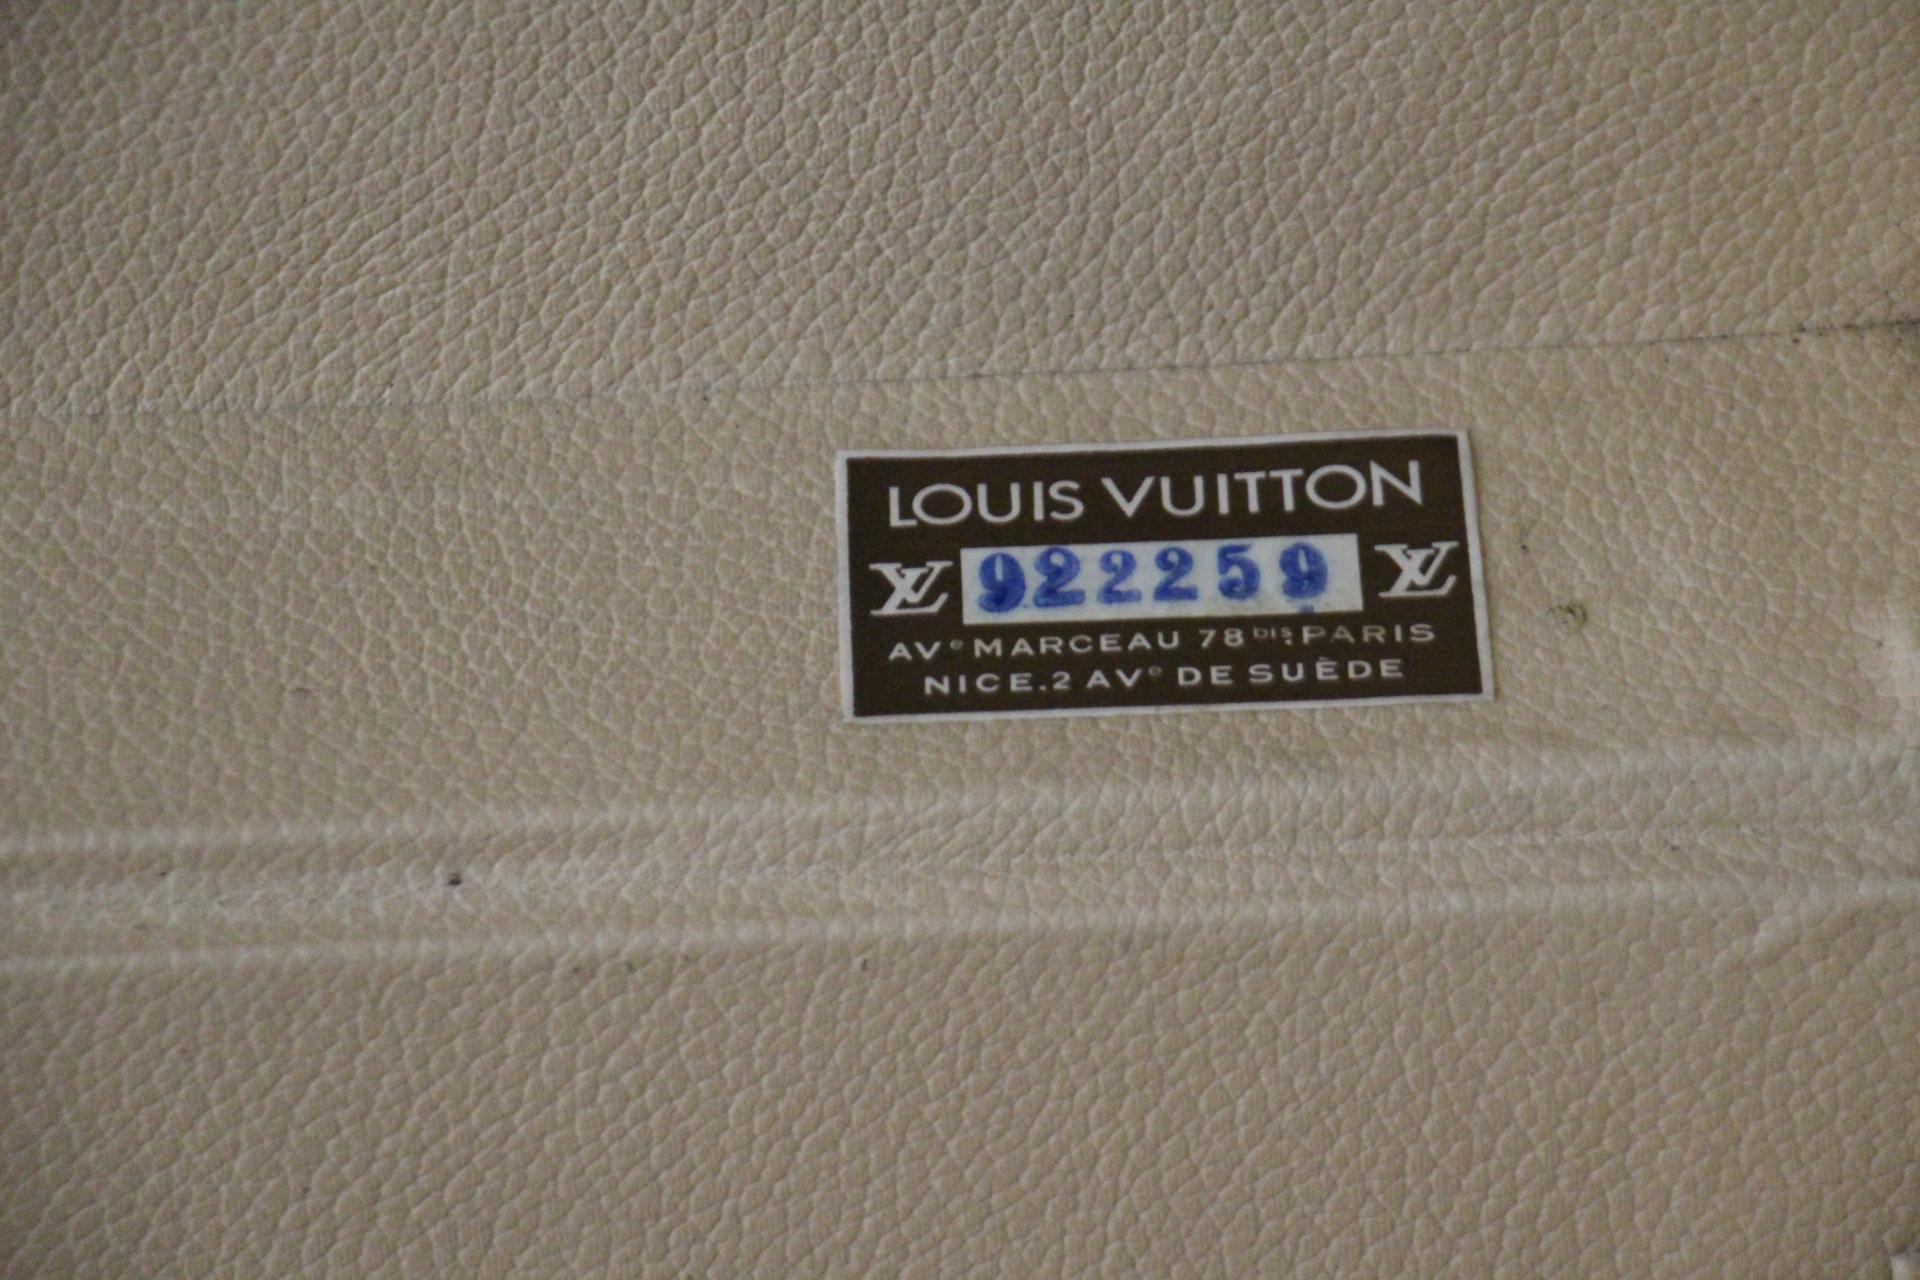 Louis Vuitton Trunk, Louis Vuitton Suitcase, Vuitton Steamer Trunk, Alzer 75 For Sale 8